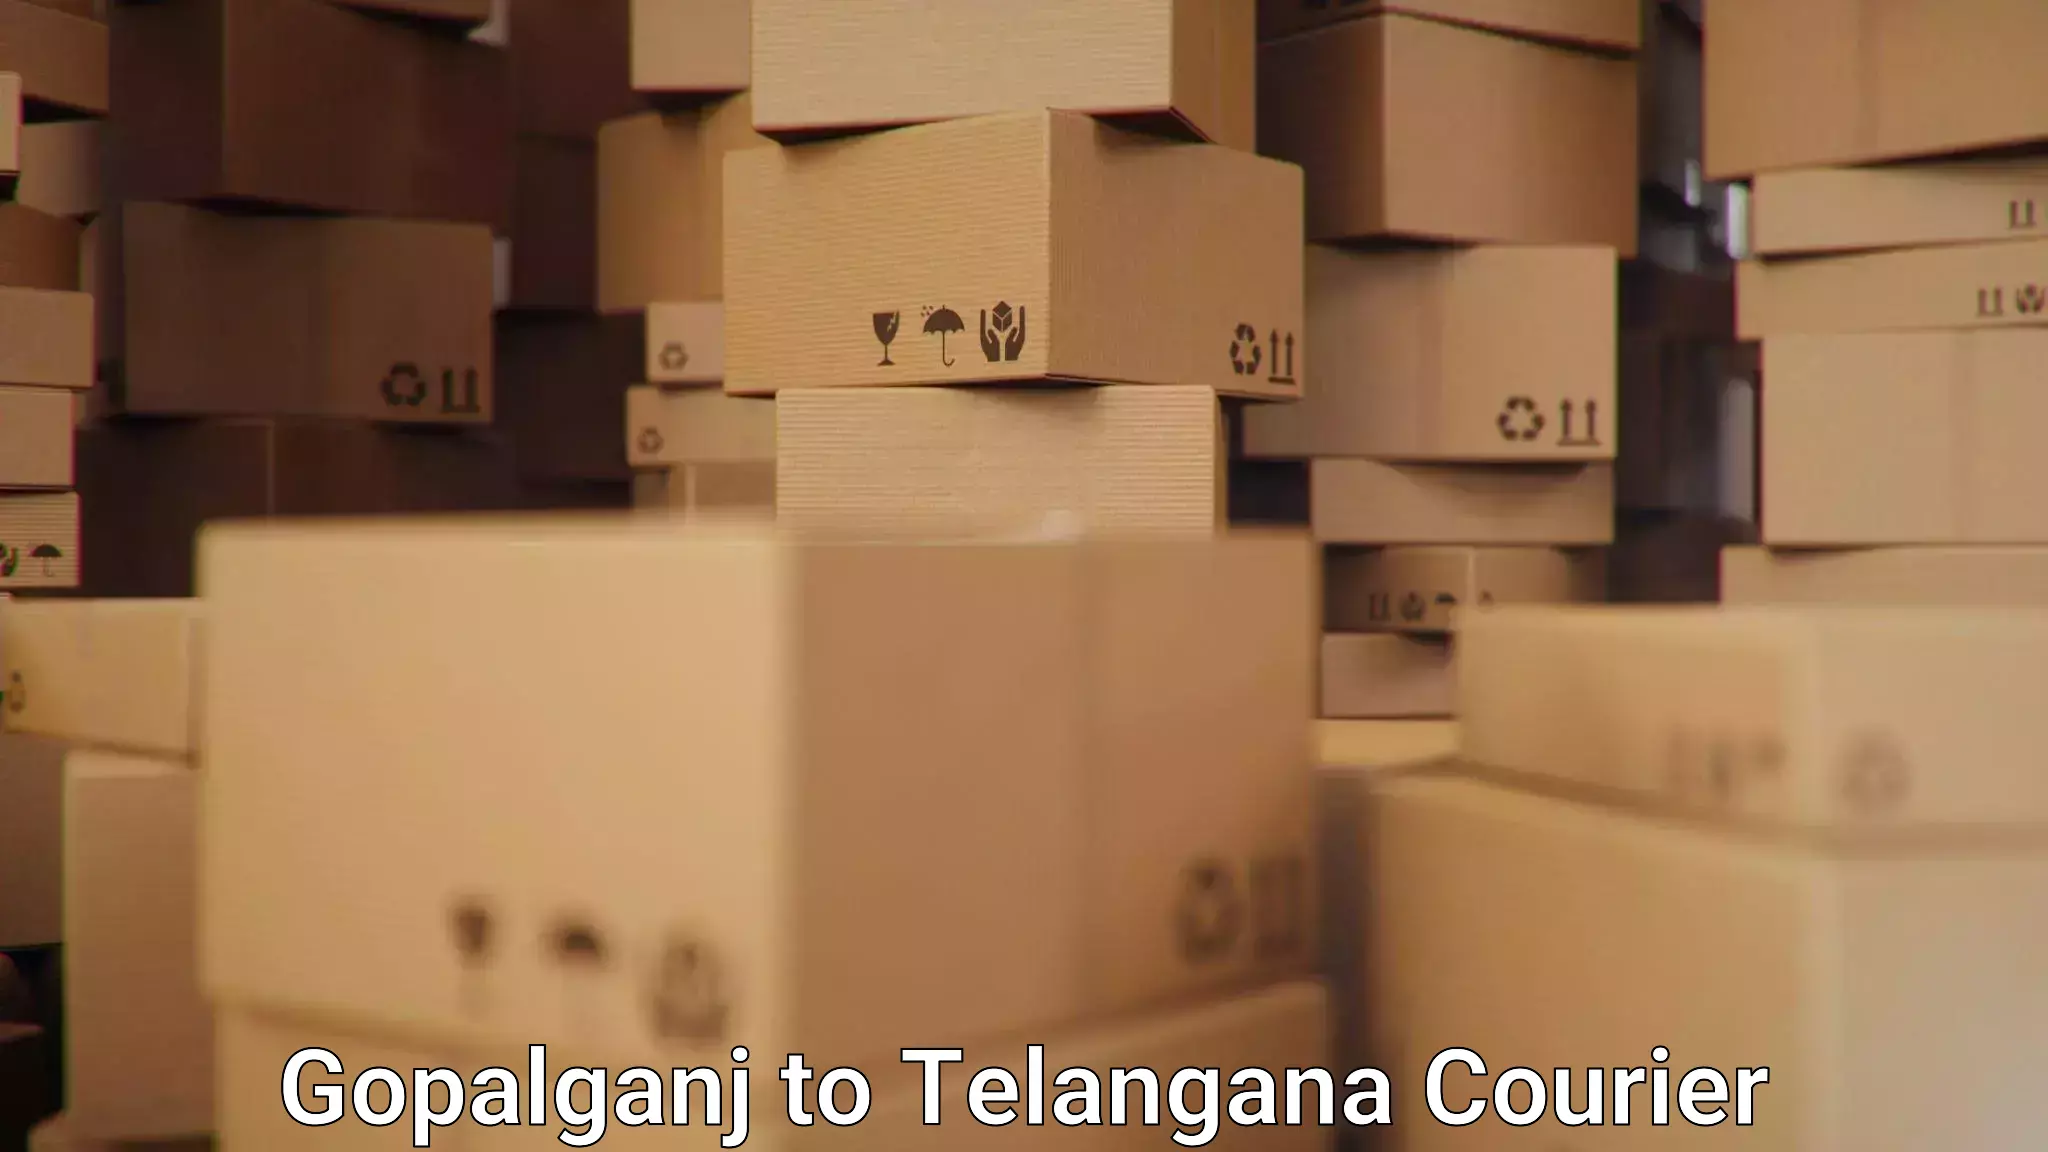 Fast shipping solutions in Gopalganj to Yellandu